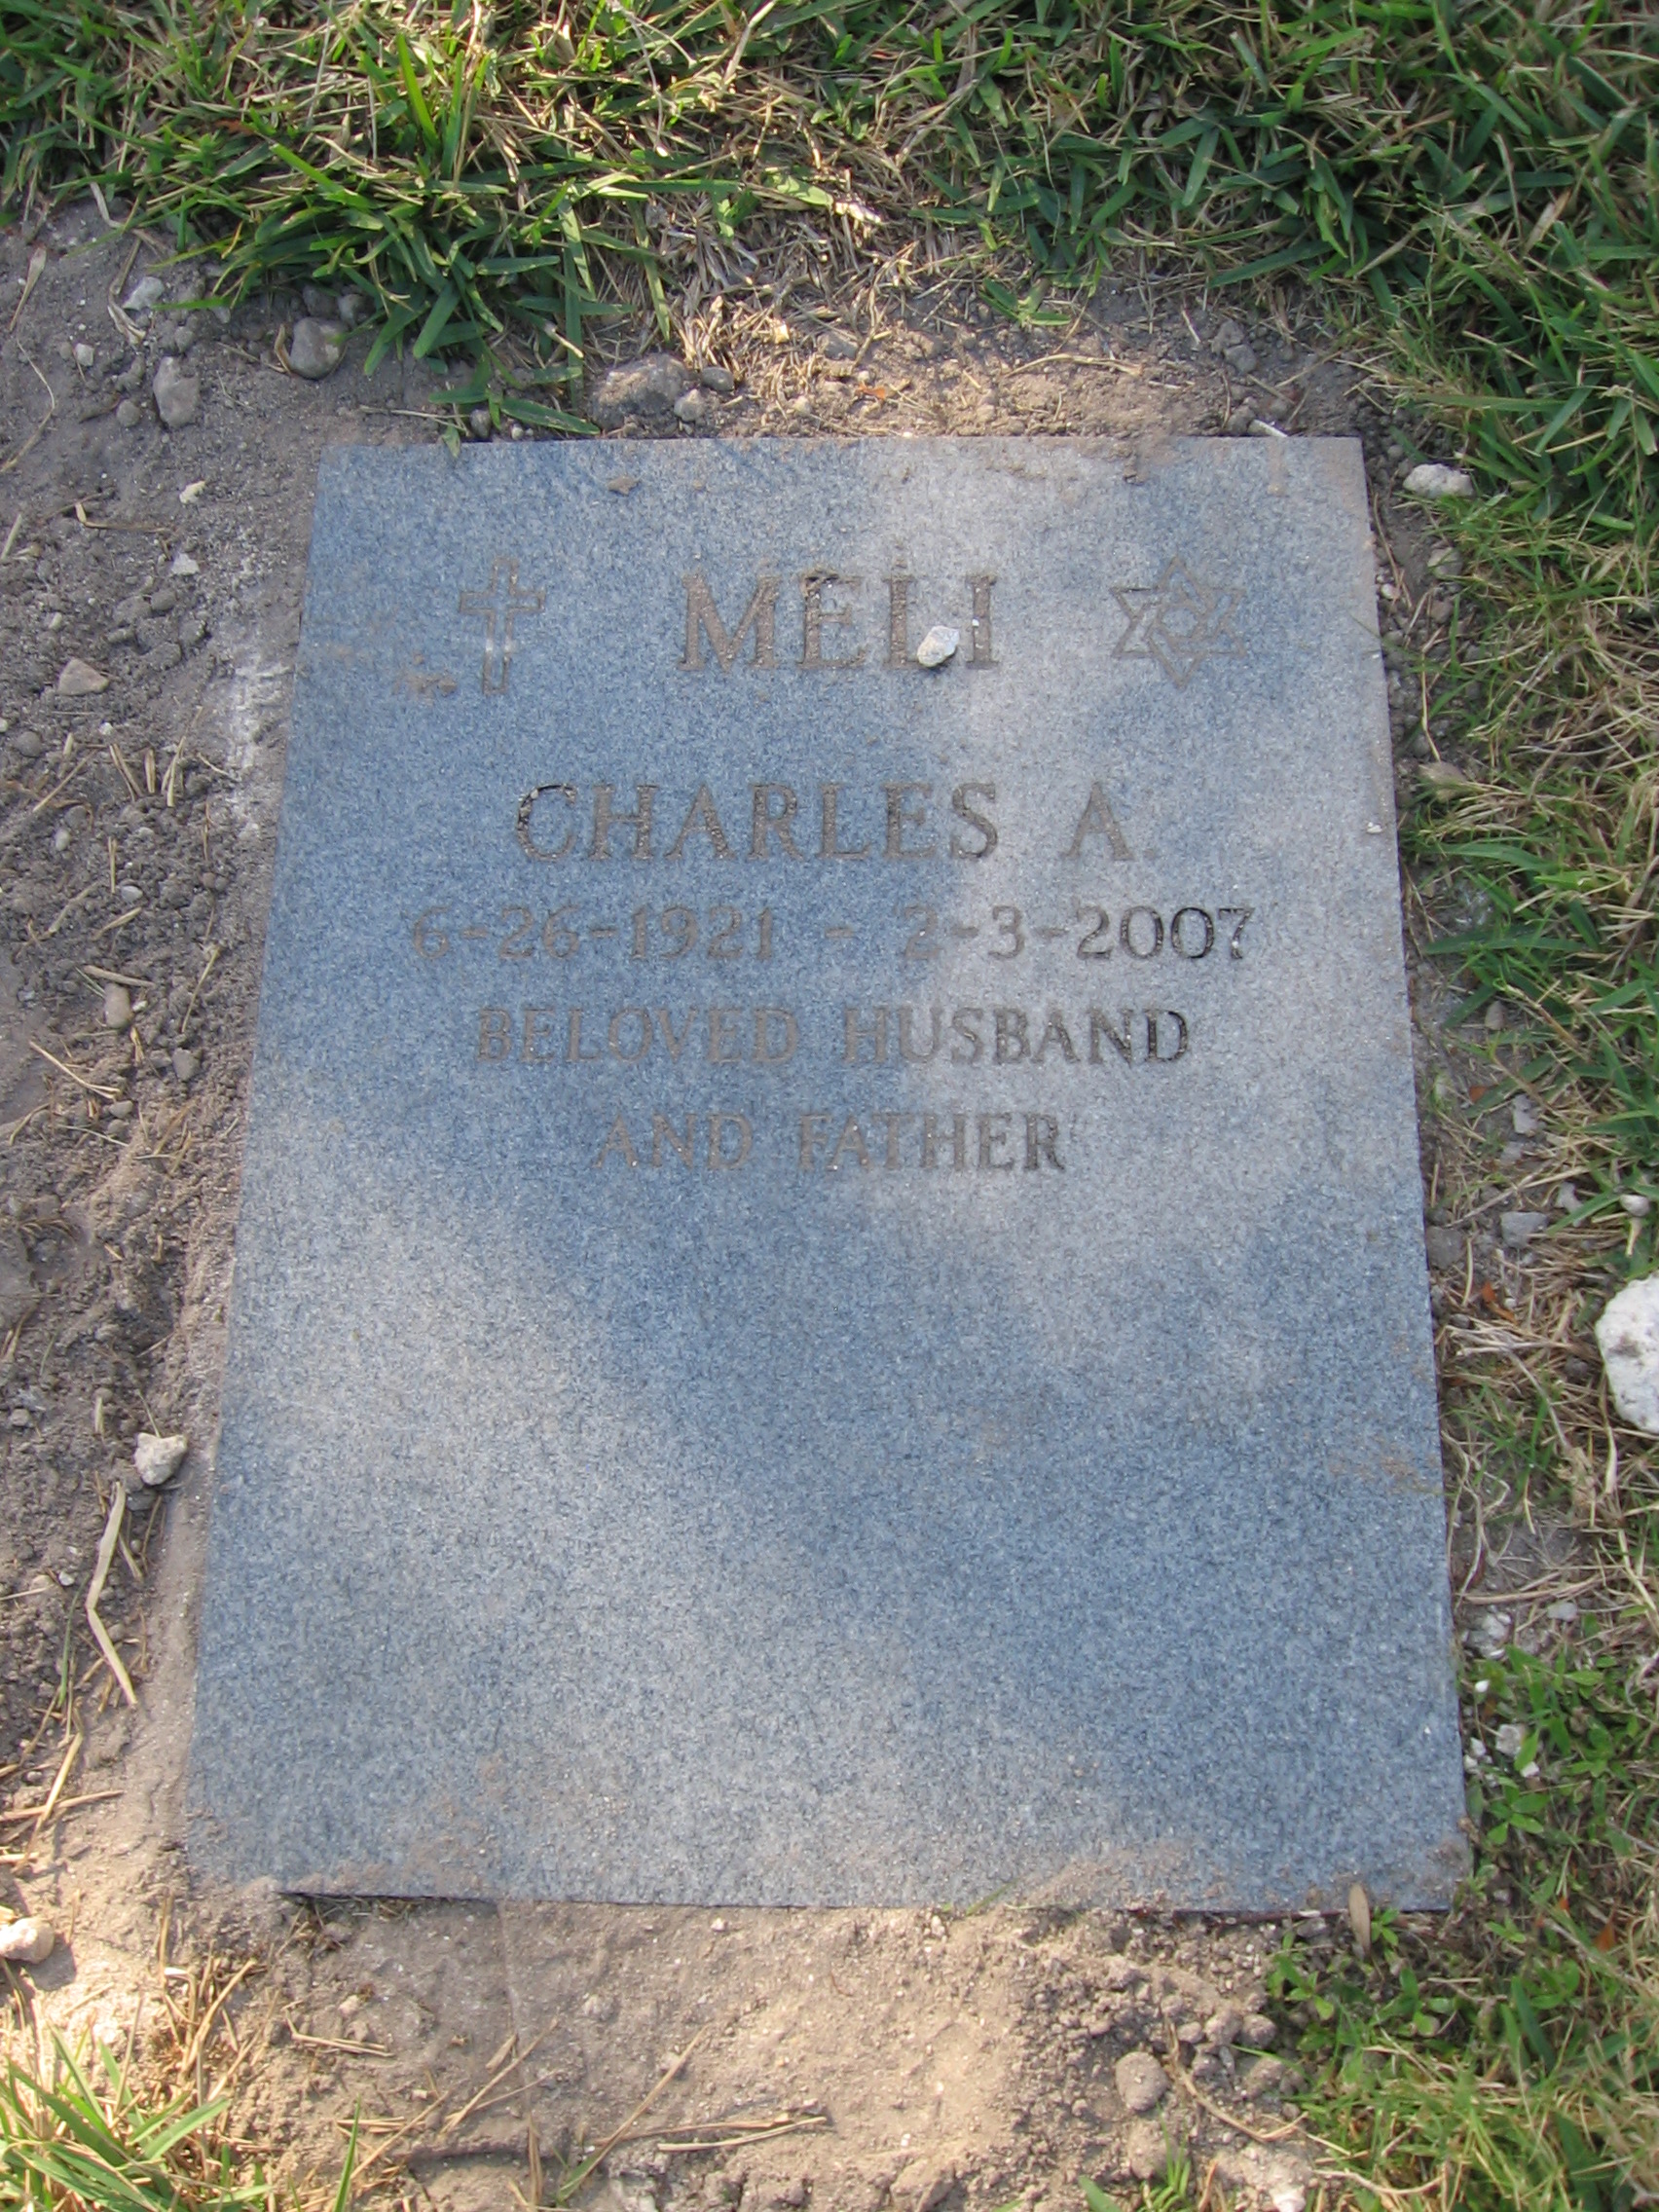 Charles A Meli